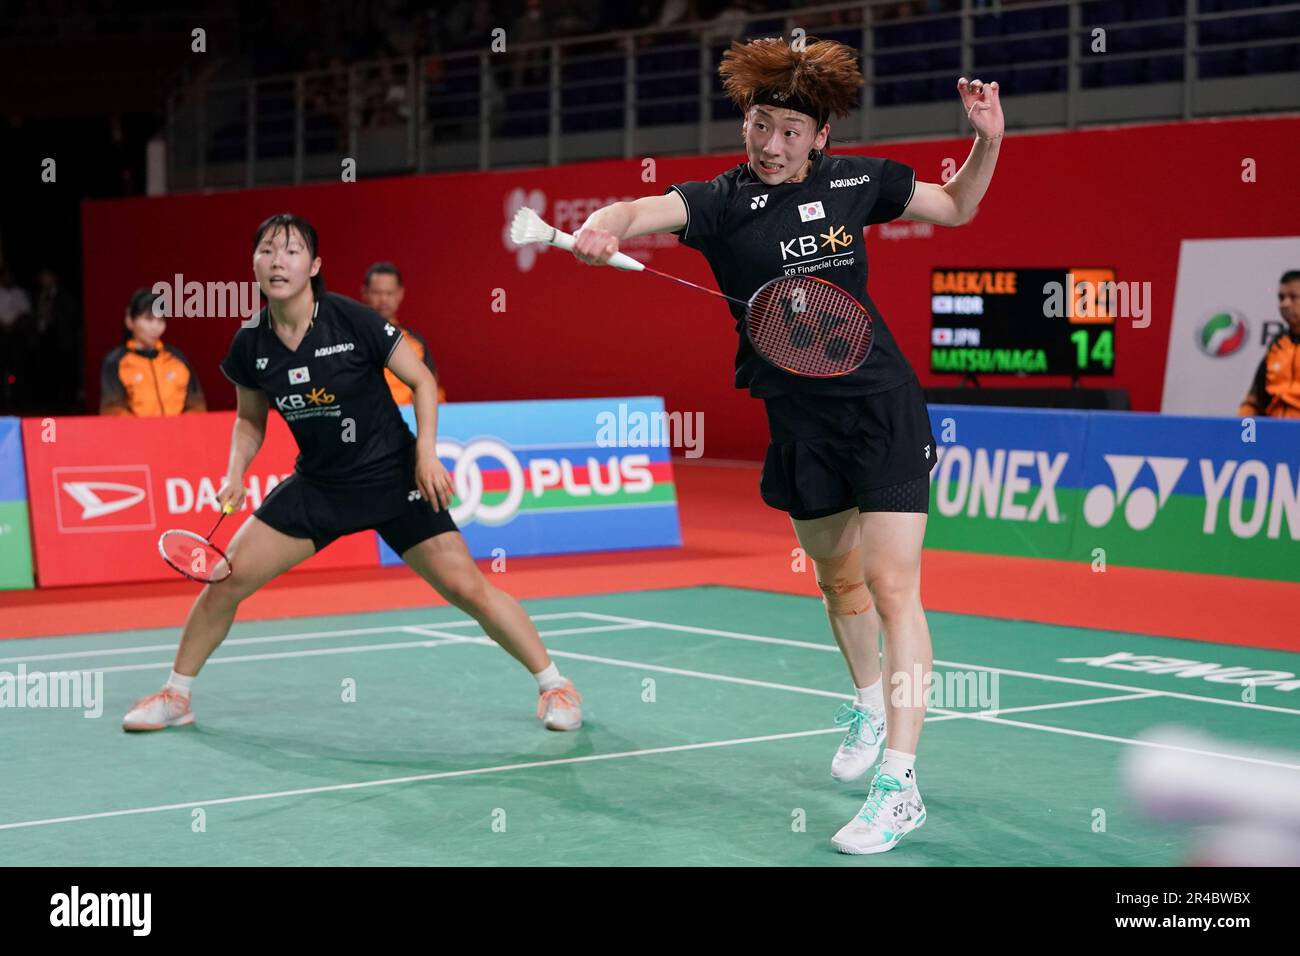 South Koreas Baek Ha Na, right, with Lee So Hee, returns a shot during their womens doubles badminton semifinals match against Japans Mayu Matsumoto and Wakana Nagahara at the Malaysia Masters badminton